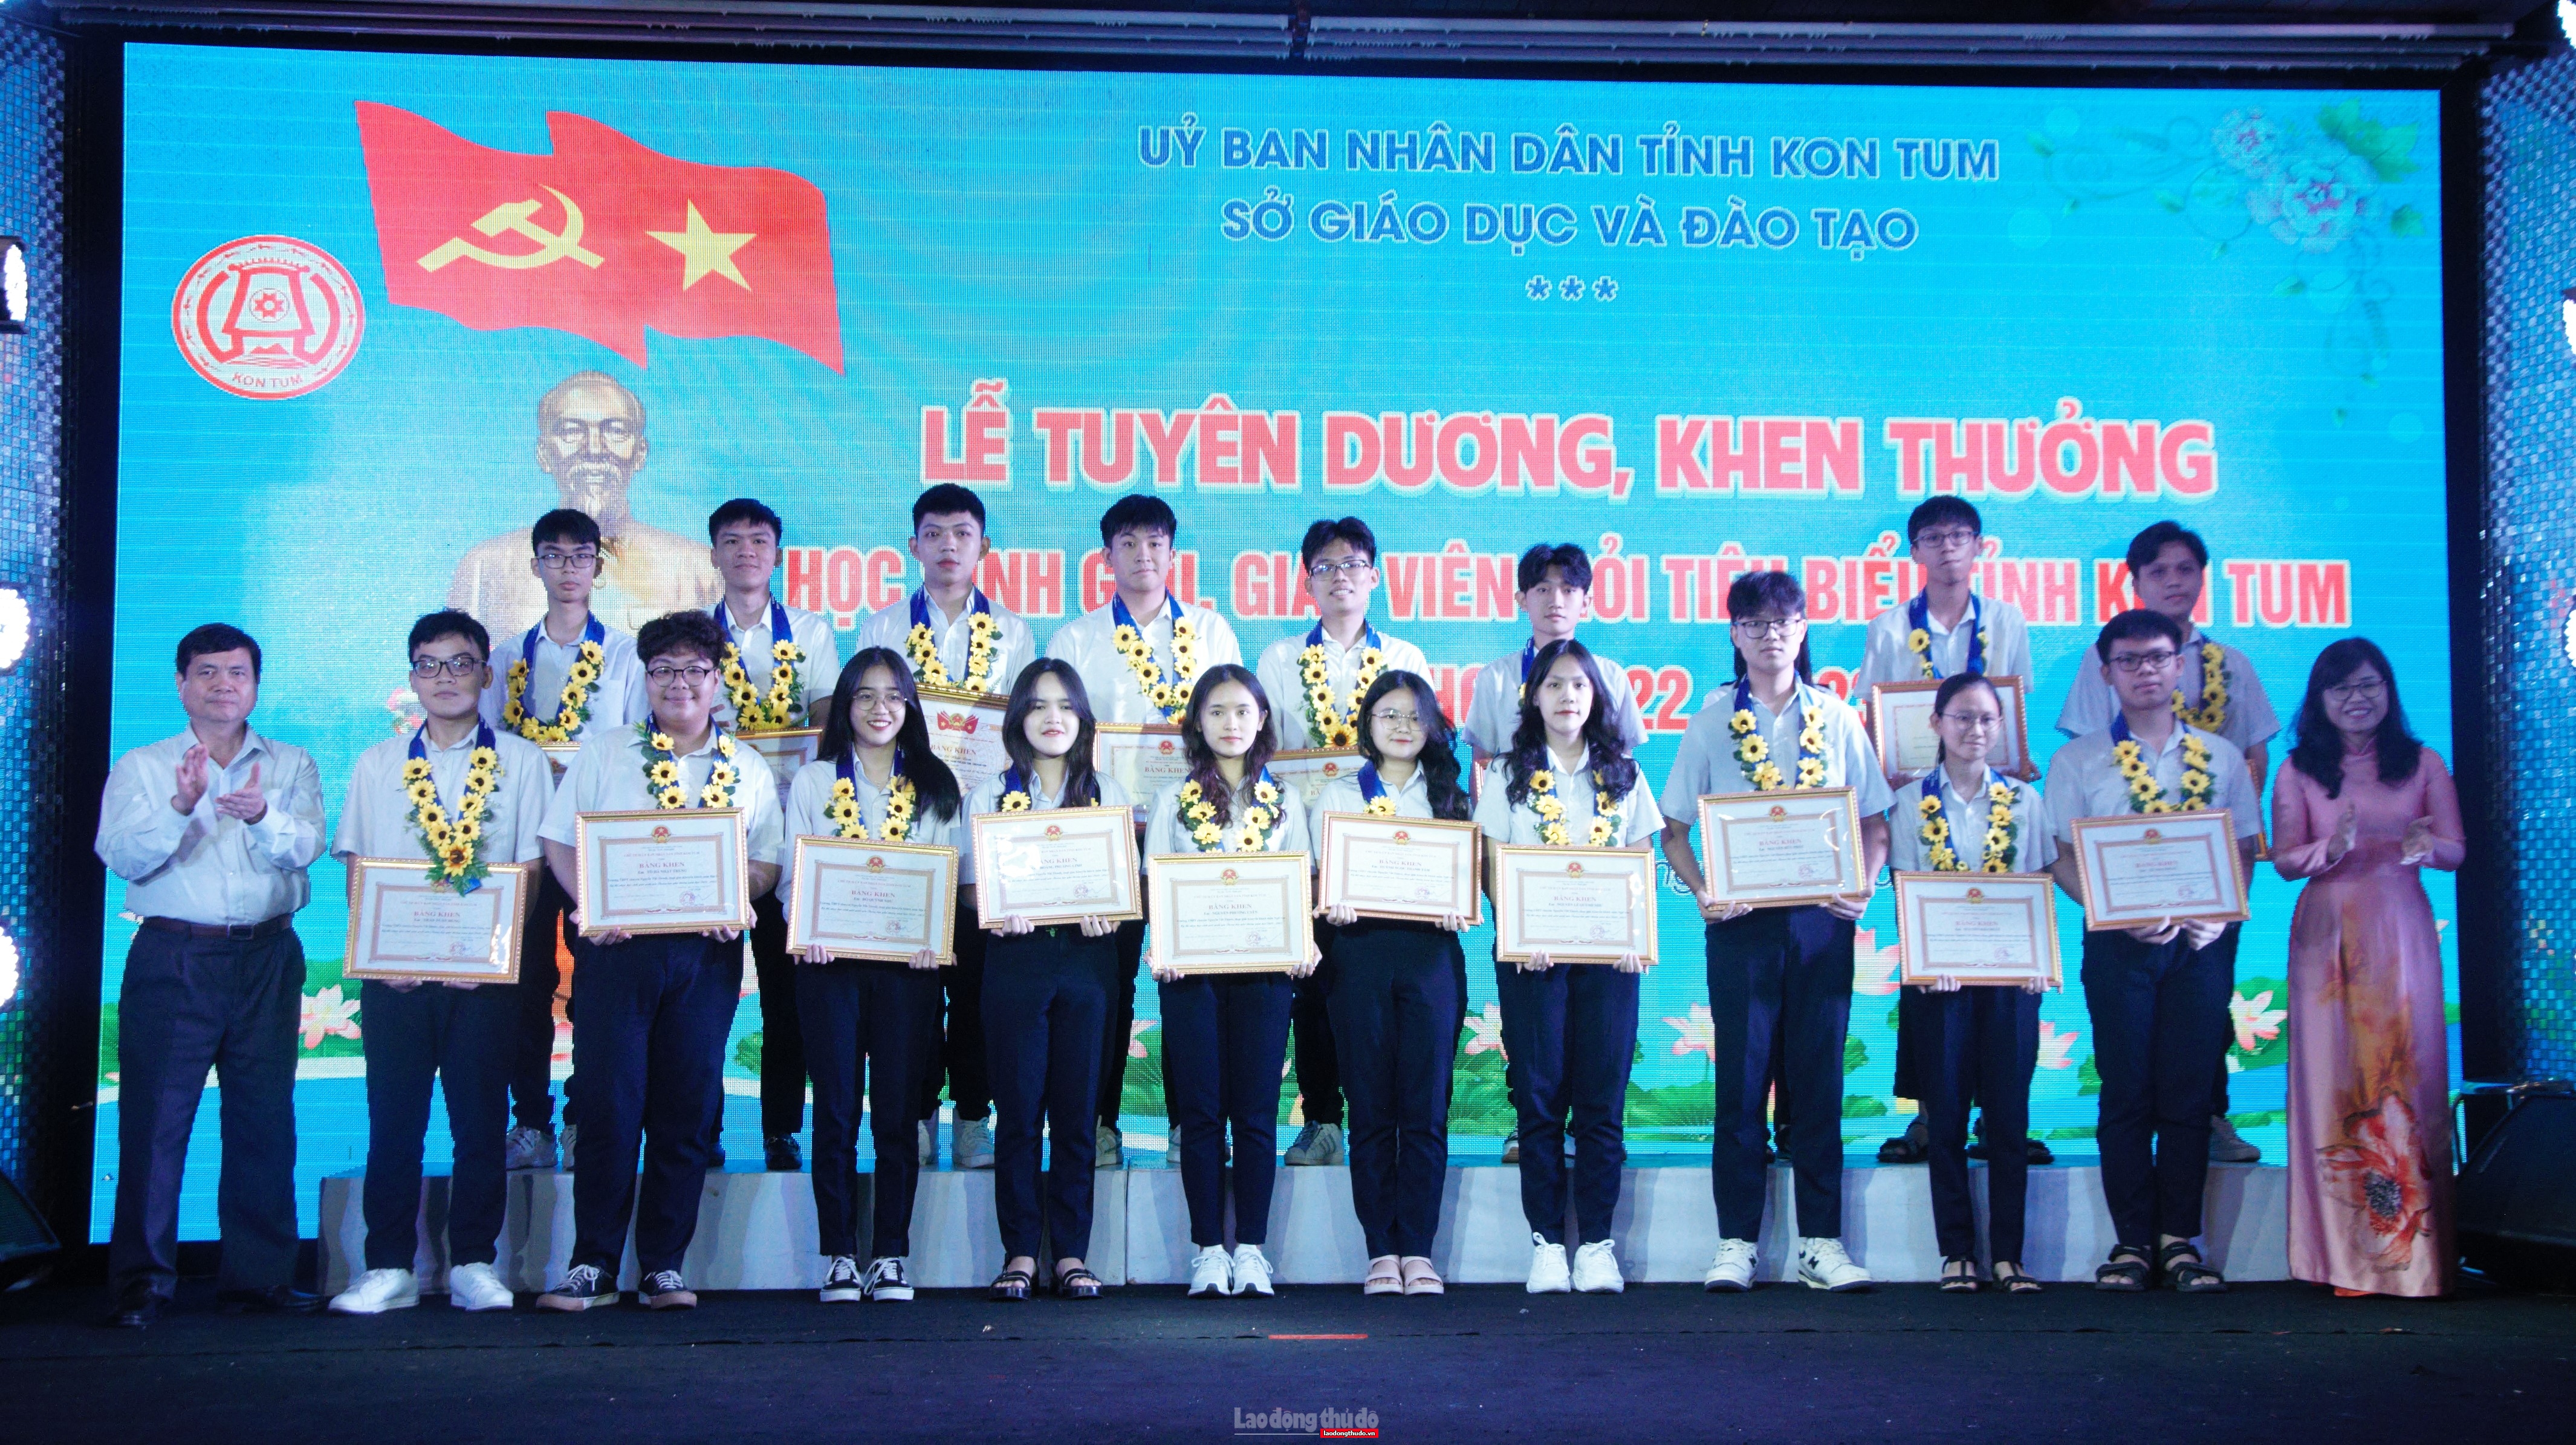 Tuyên dương, khen thưởng 273 học sinh, giáo viên giỏi tiêu biểu tỉnh Kon Tum